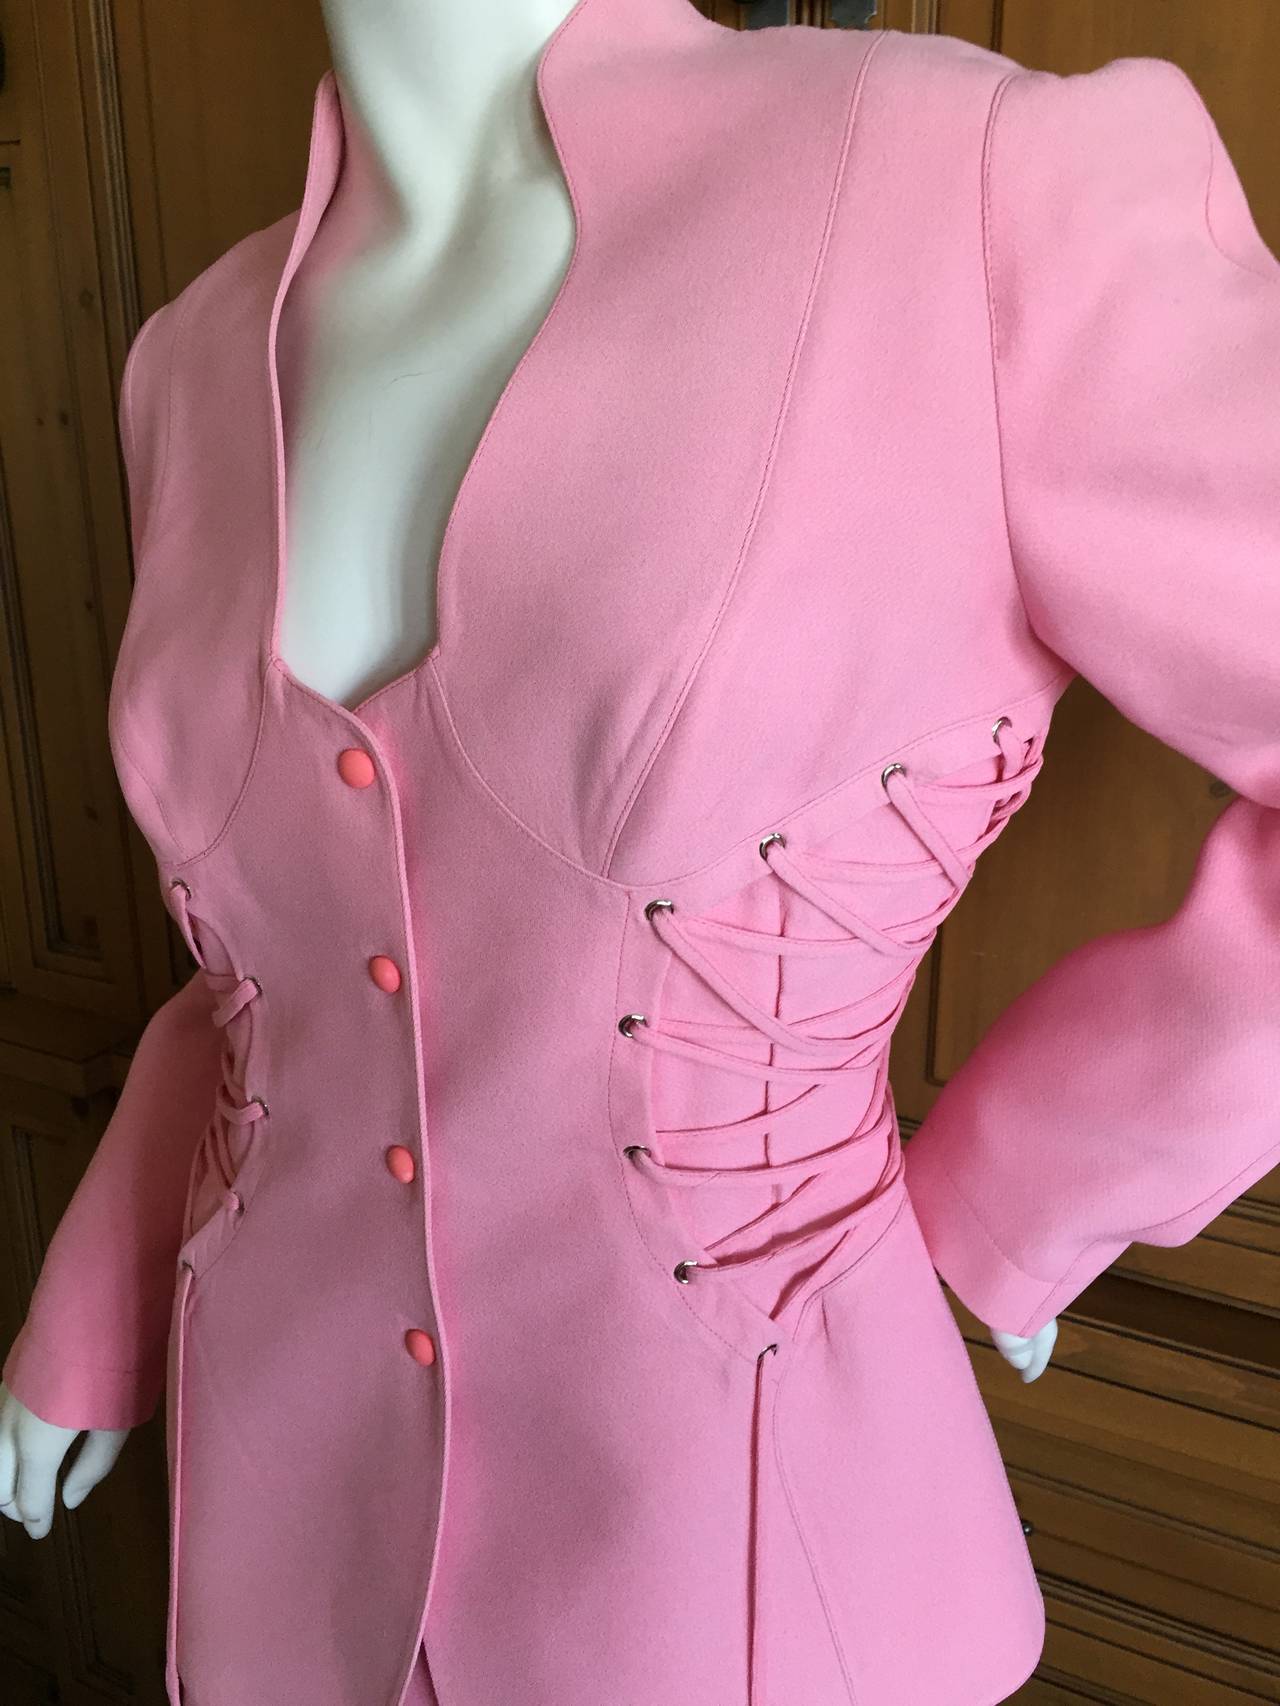 Thierry Mugler Vintage Bubblegum Pink Suit w Corset Lace Details